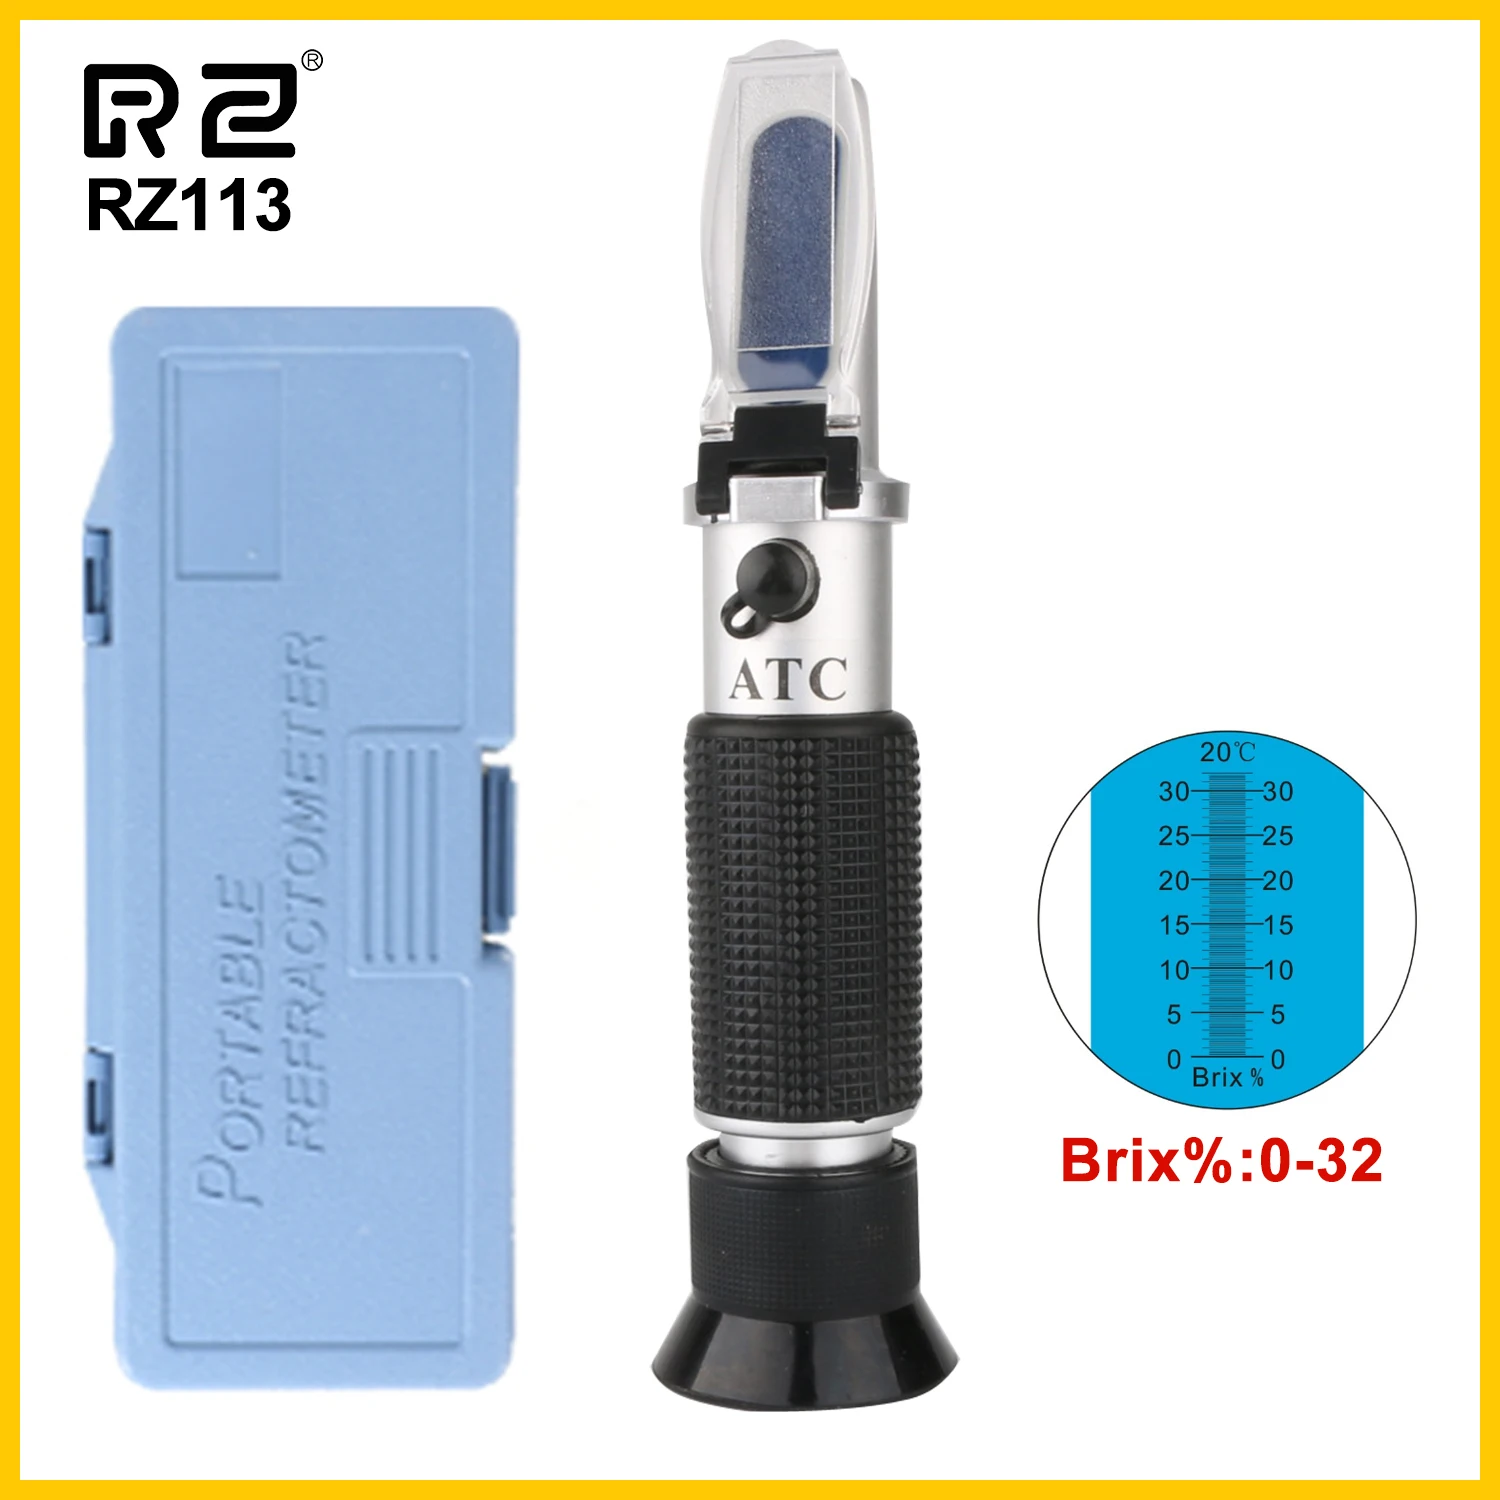 Refractómetro Brix auténtico para venta al por menor, 32% RHB-32ATC 0 ~, medidor óptico de azúcar, bebidas, contenido ATC, herramienta de mano